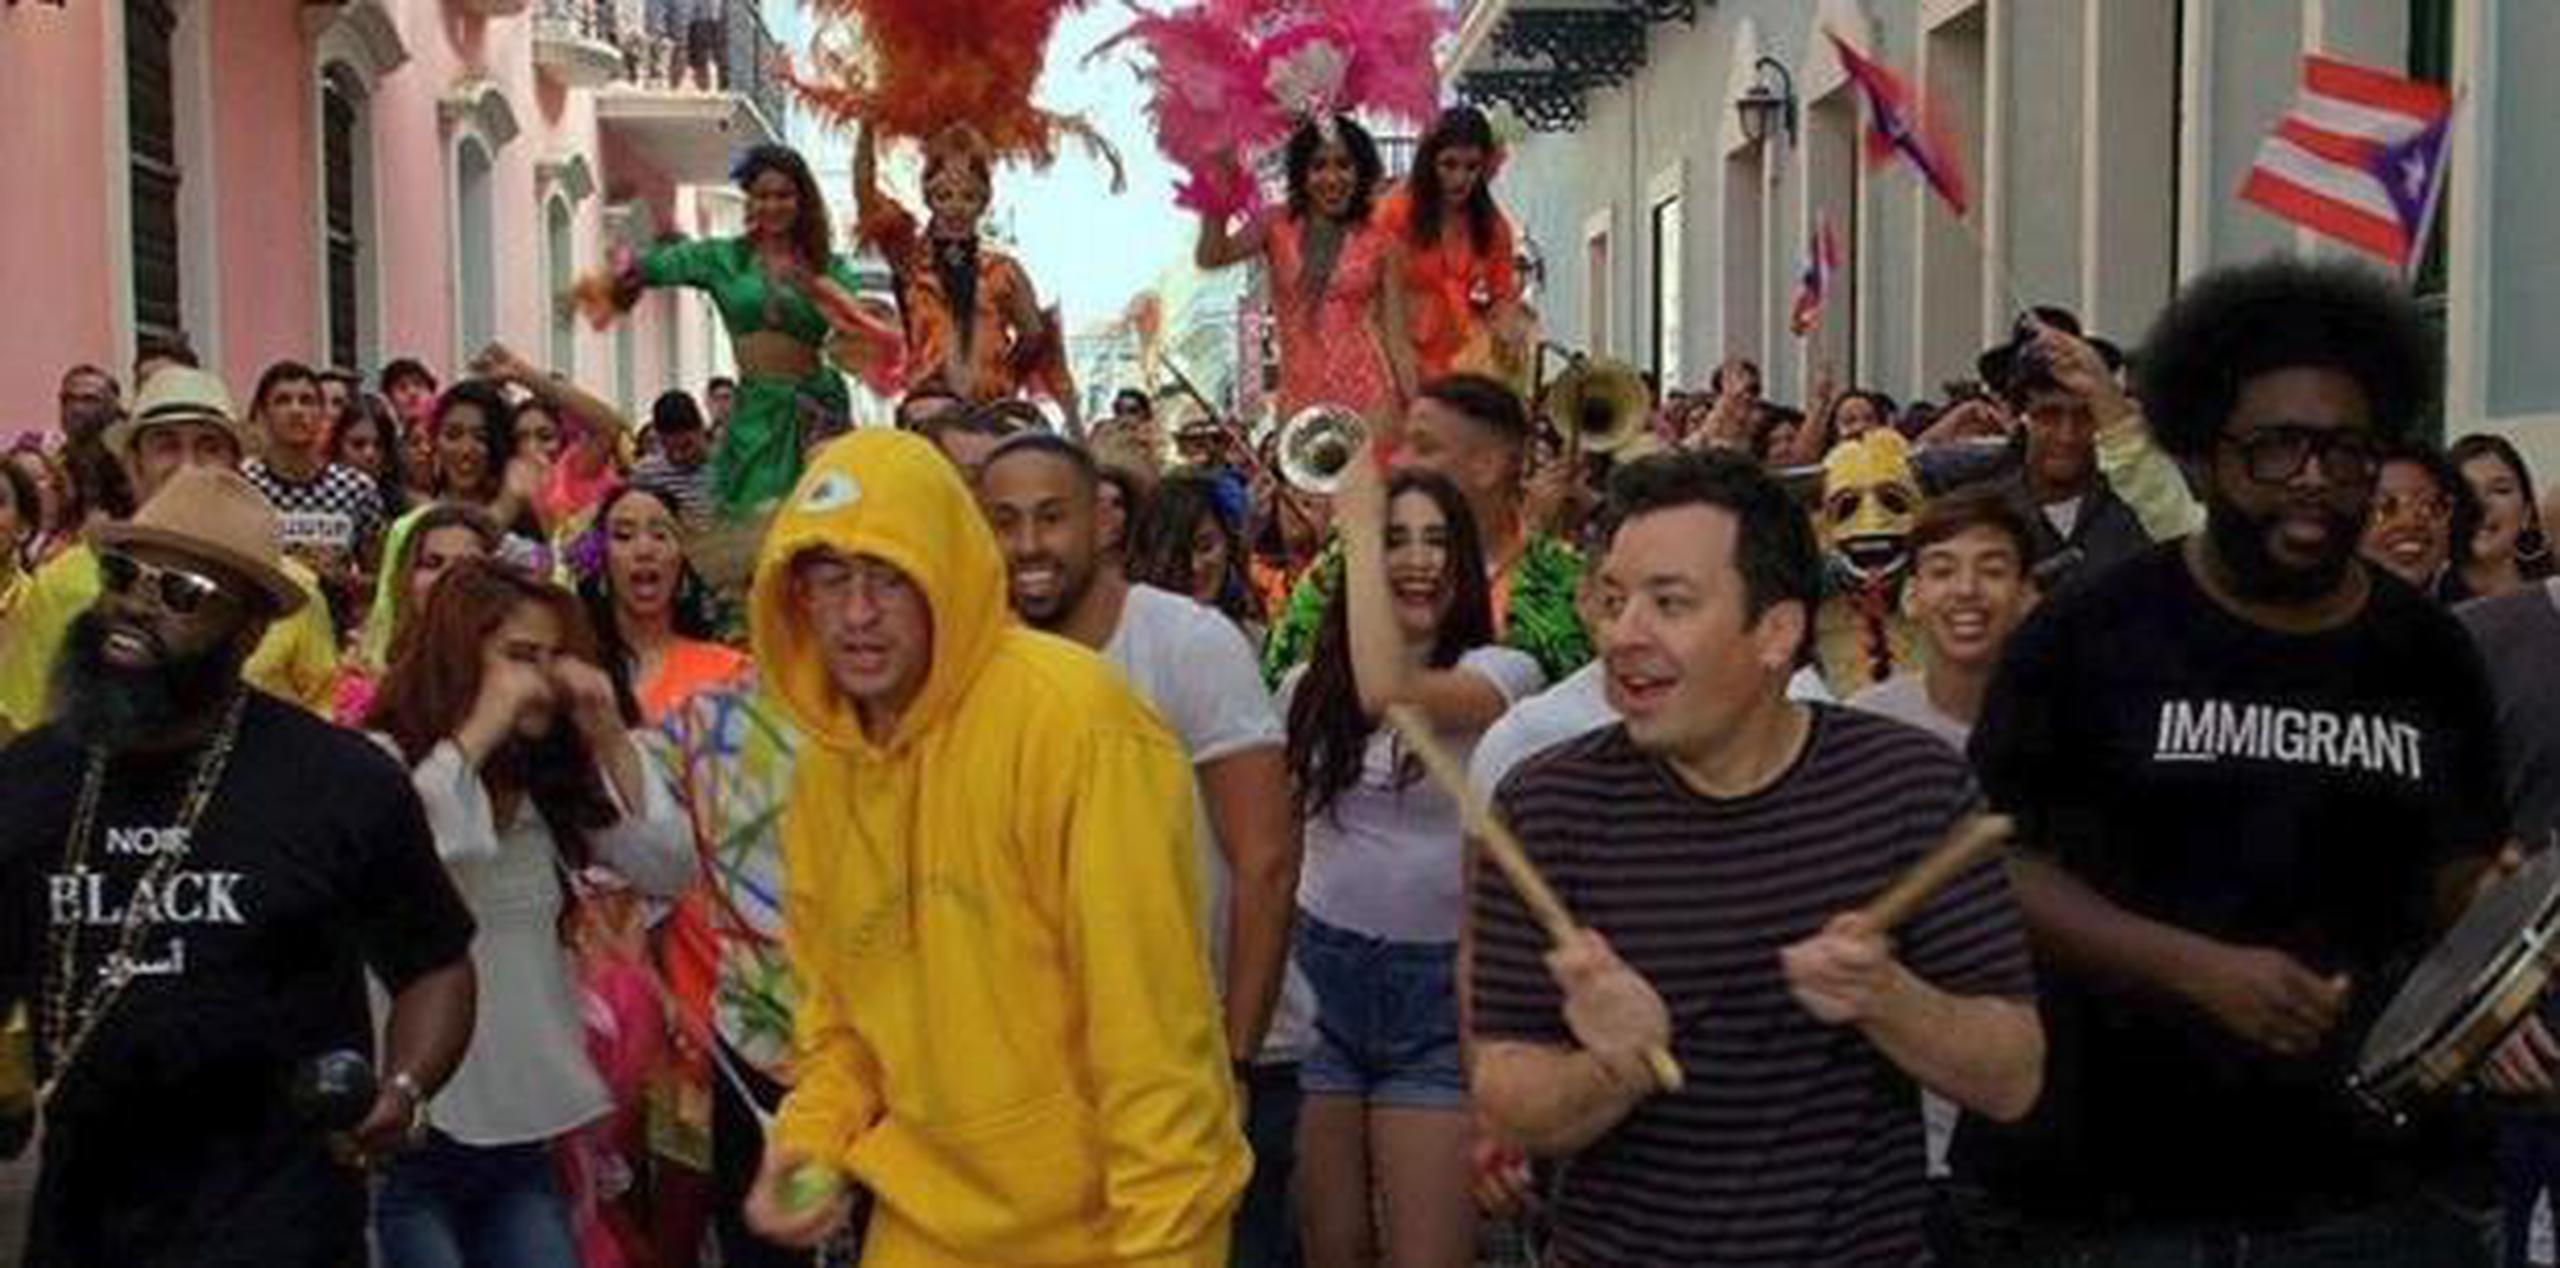 Como parte del programa, Bad Bunny interpretó "Mía" en el Viejo San Juan con una comparsa. (Instagram / @fallontonight)